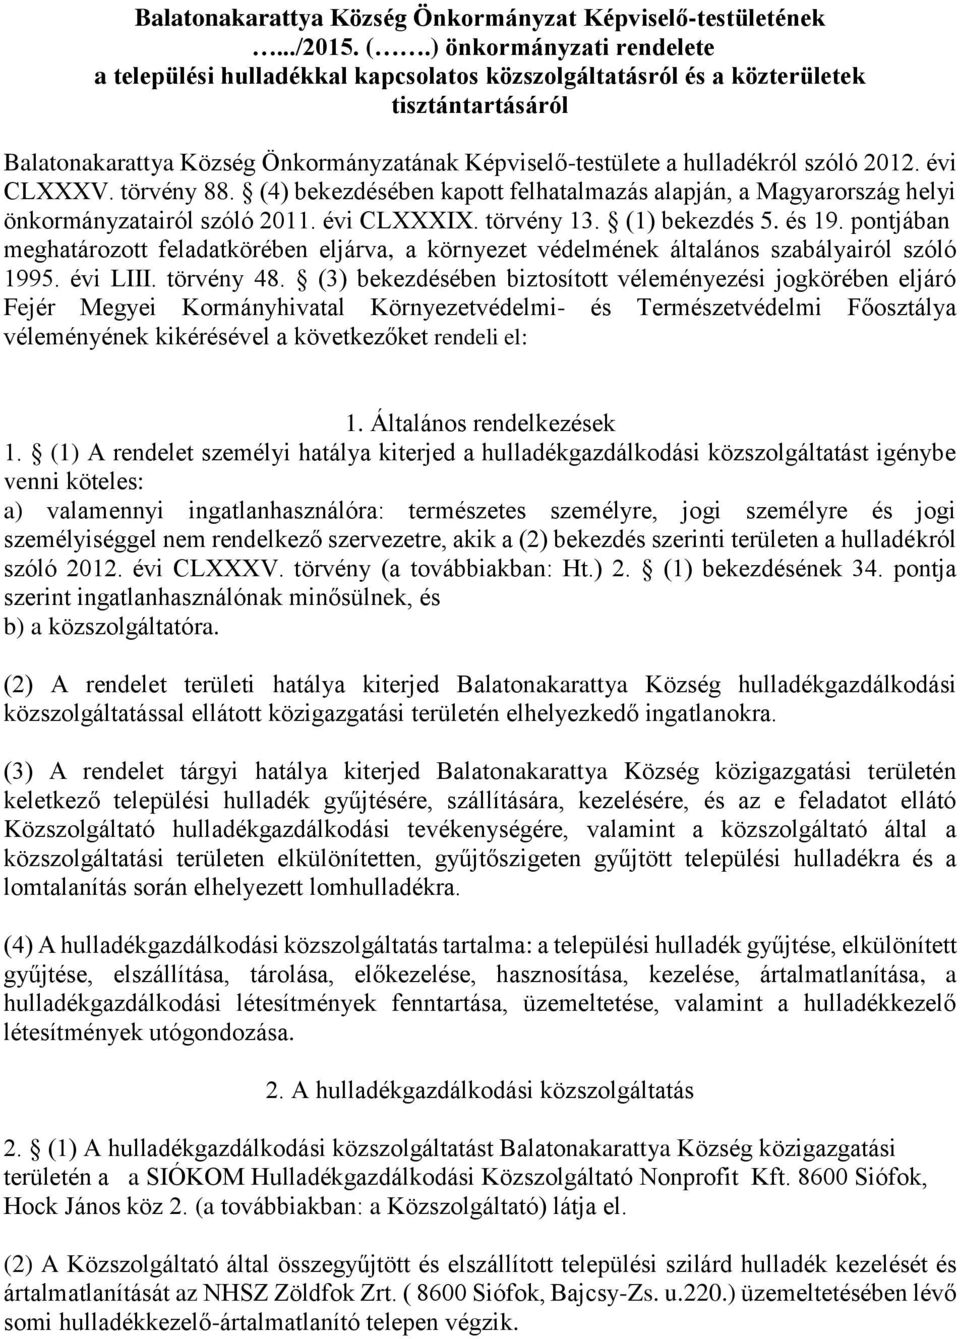 2012. évi CLXXXV. törvény 88. (4) bekezdésében kapott felhatalmazás alapján, a Magyarország helyi önkormányzatairól szóló 2011. évi CLXXXIX. törvény 13. (1) bekezdés 5. és 19.